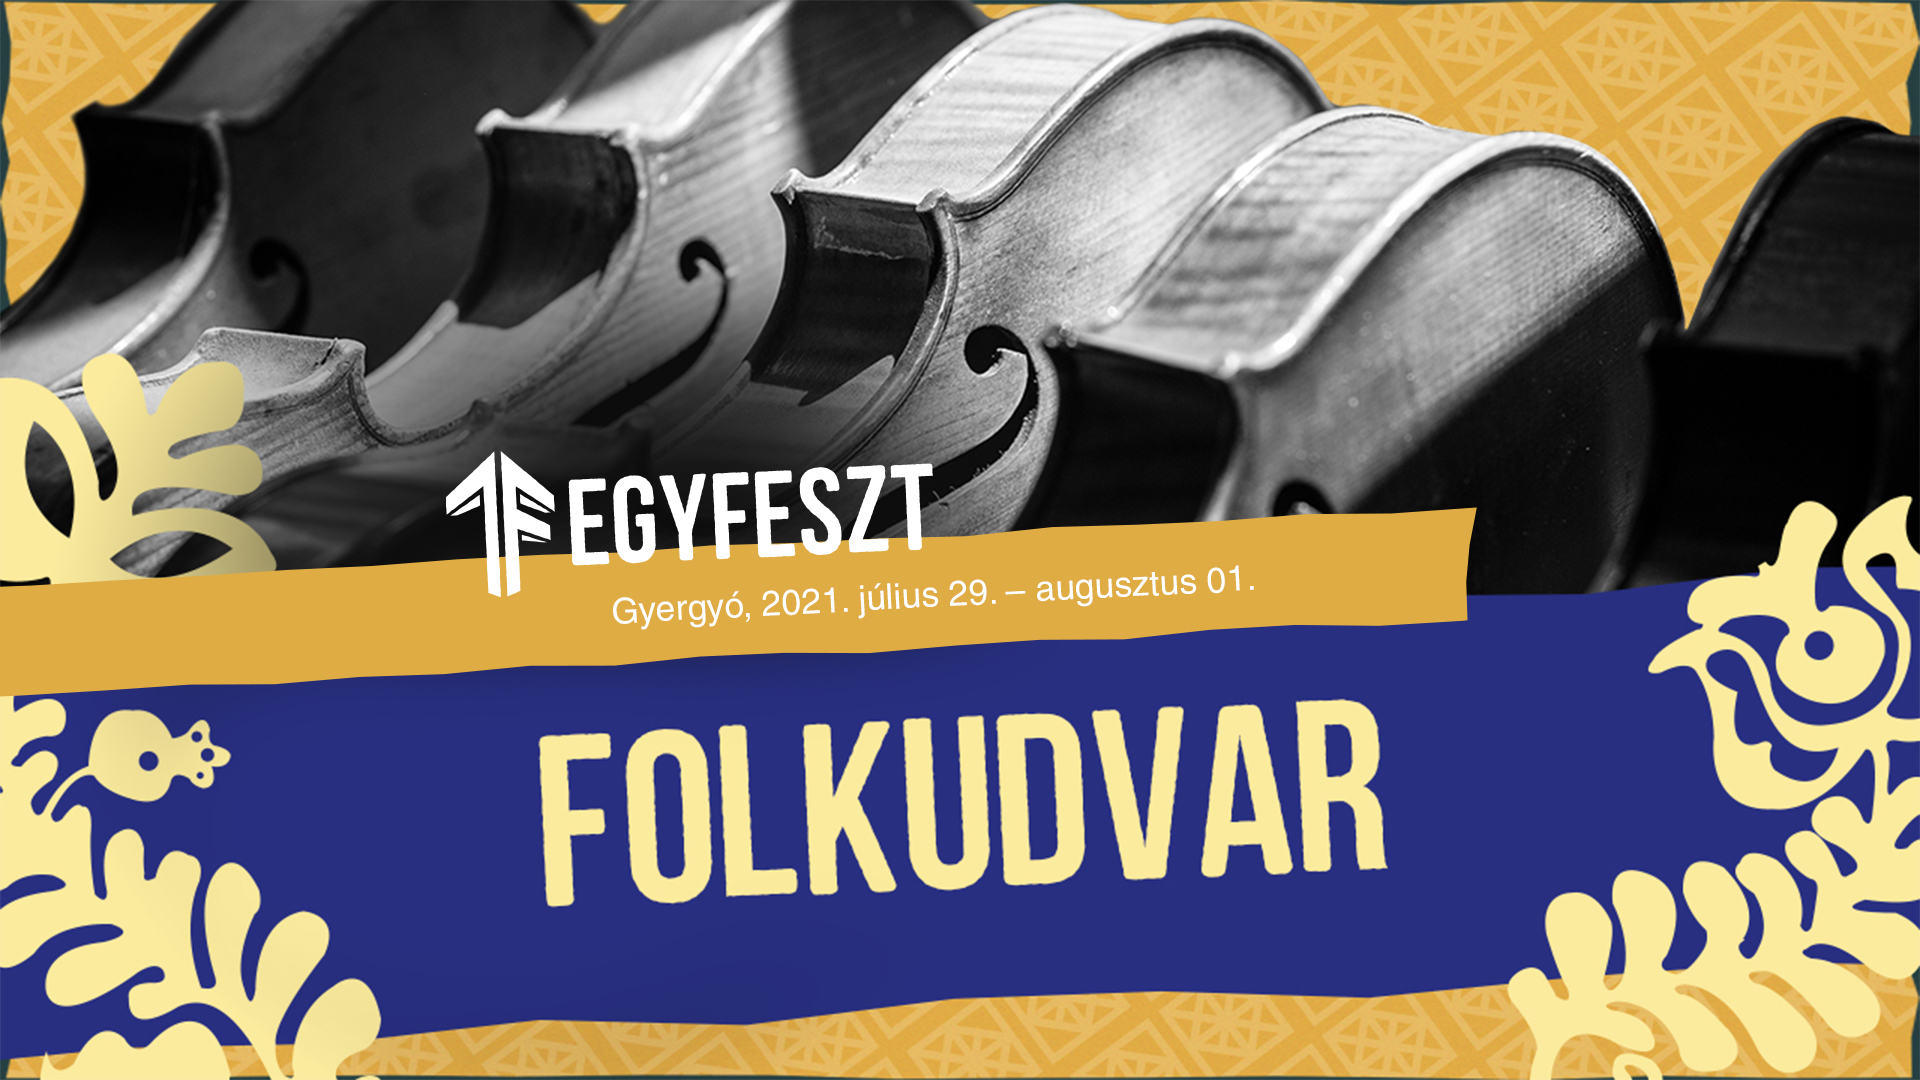 1f folkudvar event cover 1920x1080